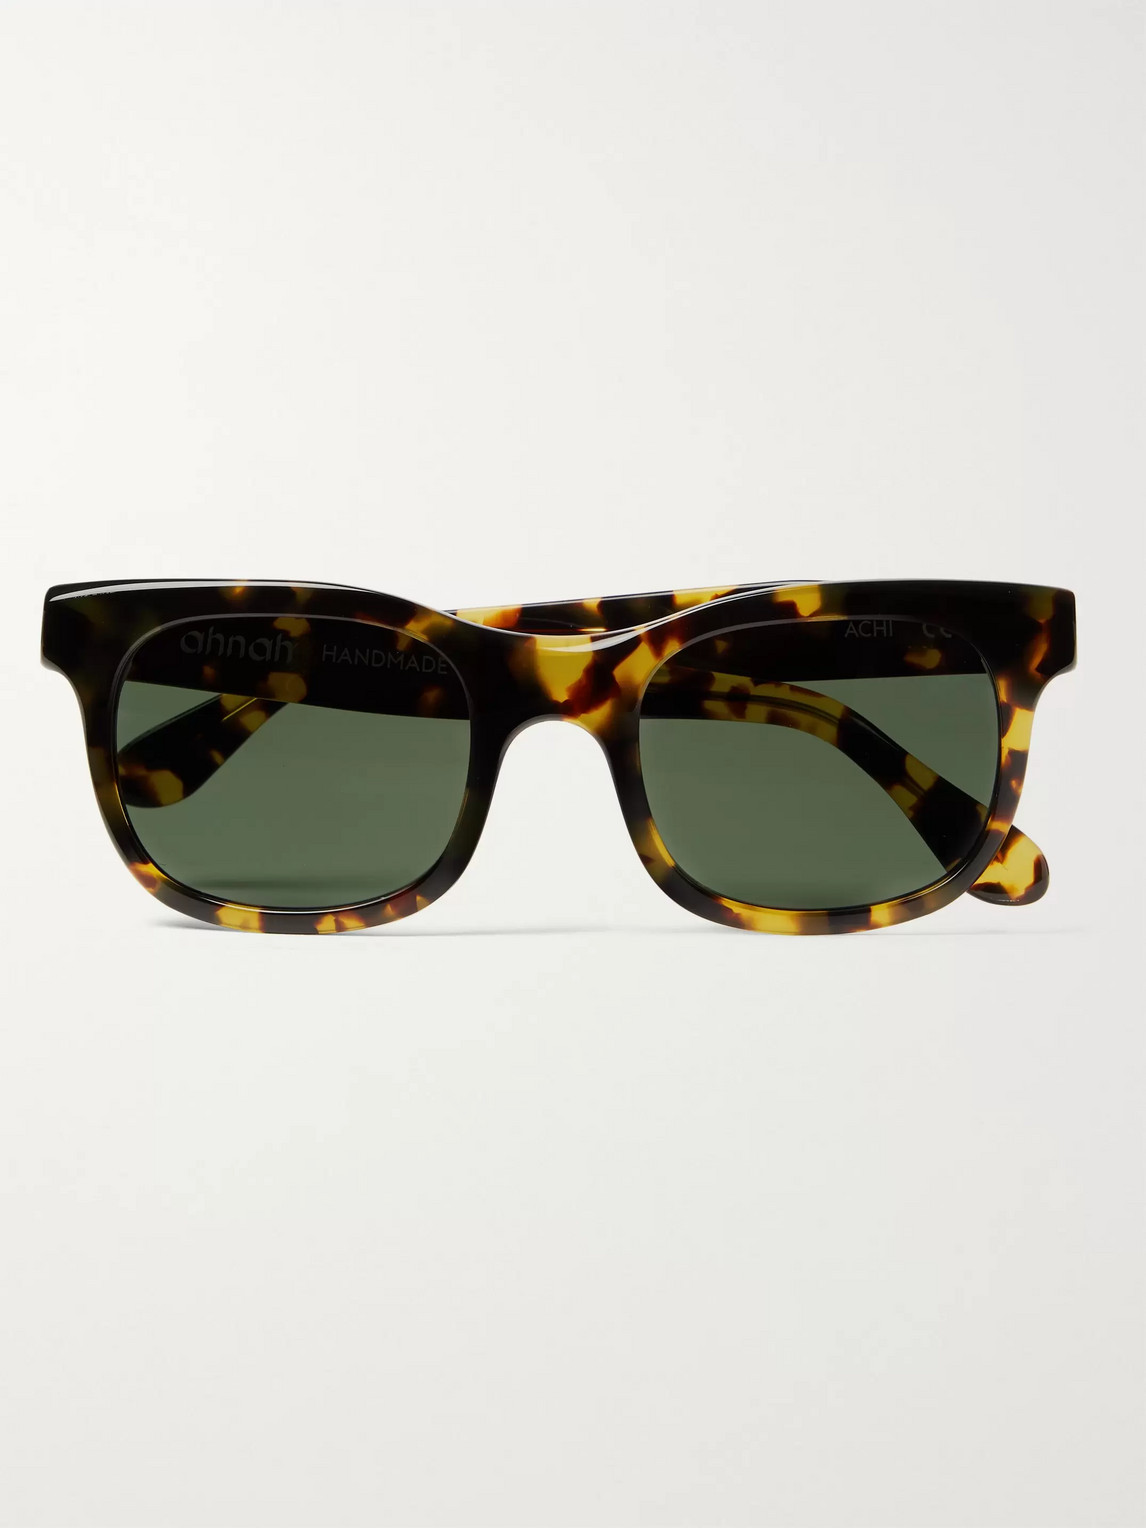 Ahnah Achi Square-frame Tortoiseshell Bio-acetate Sunglasses